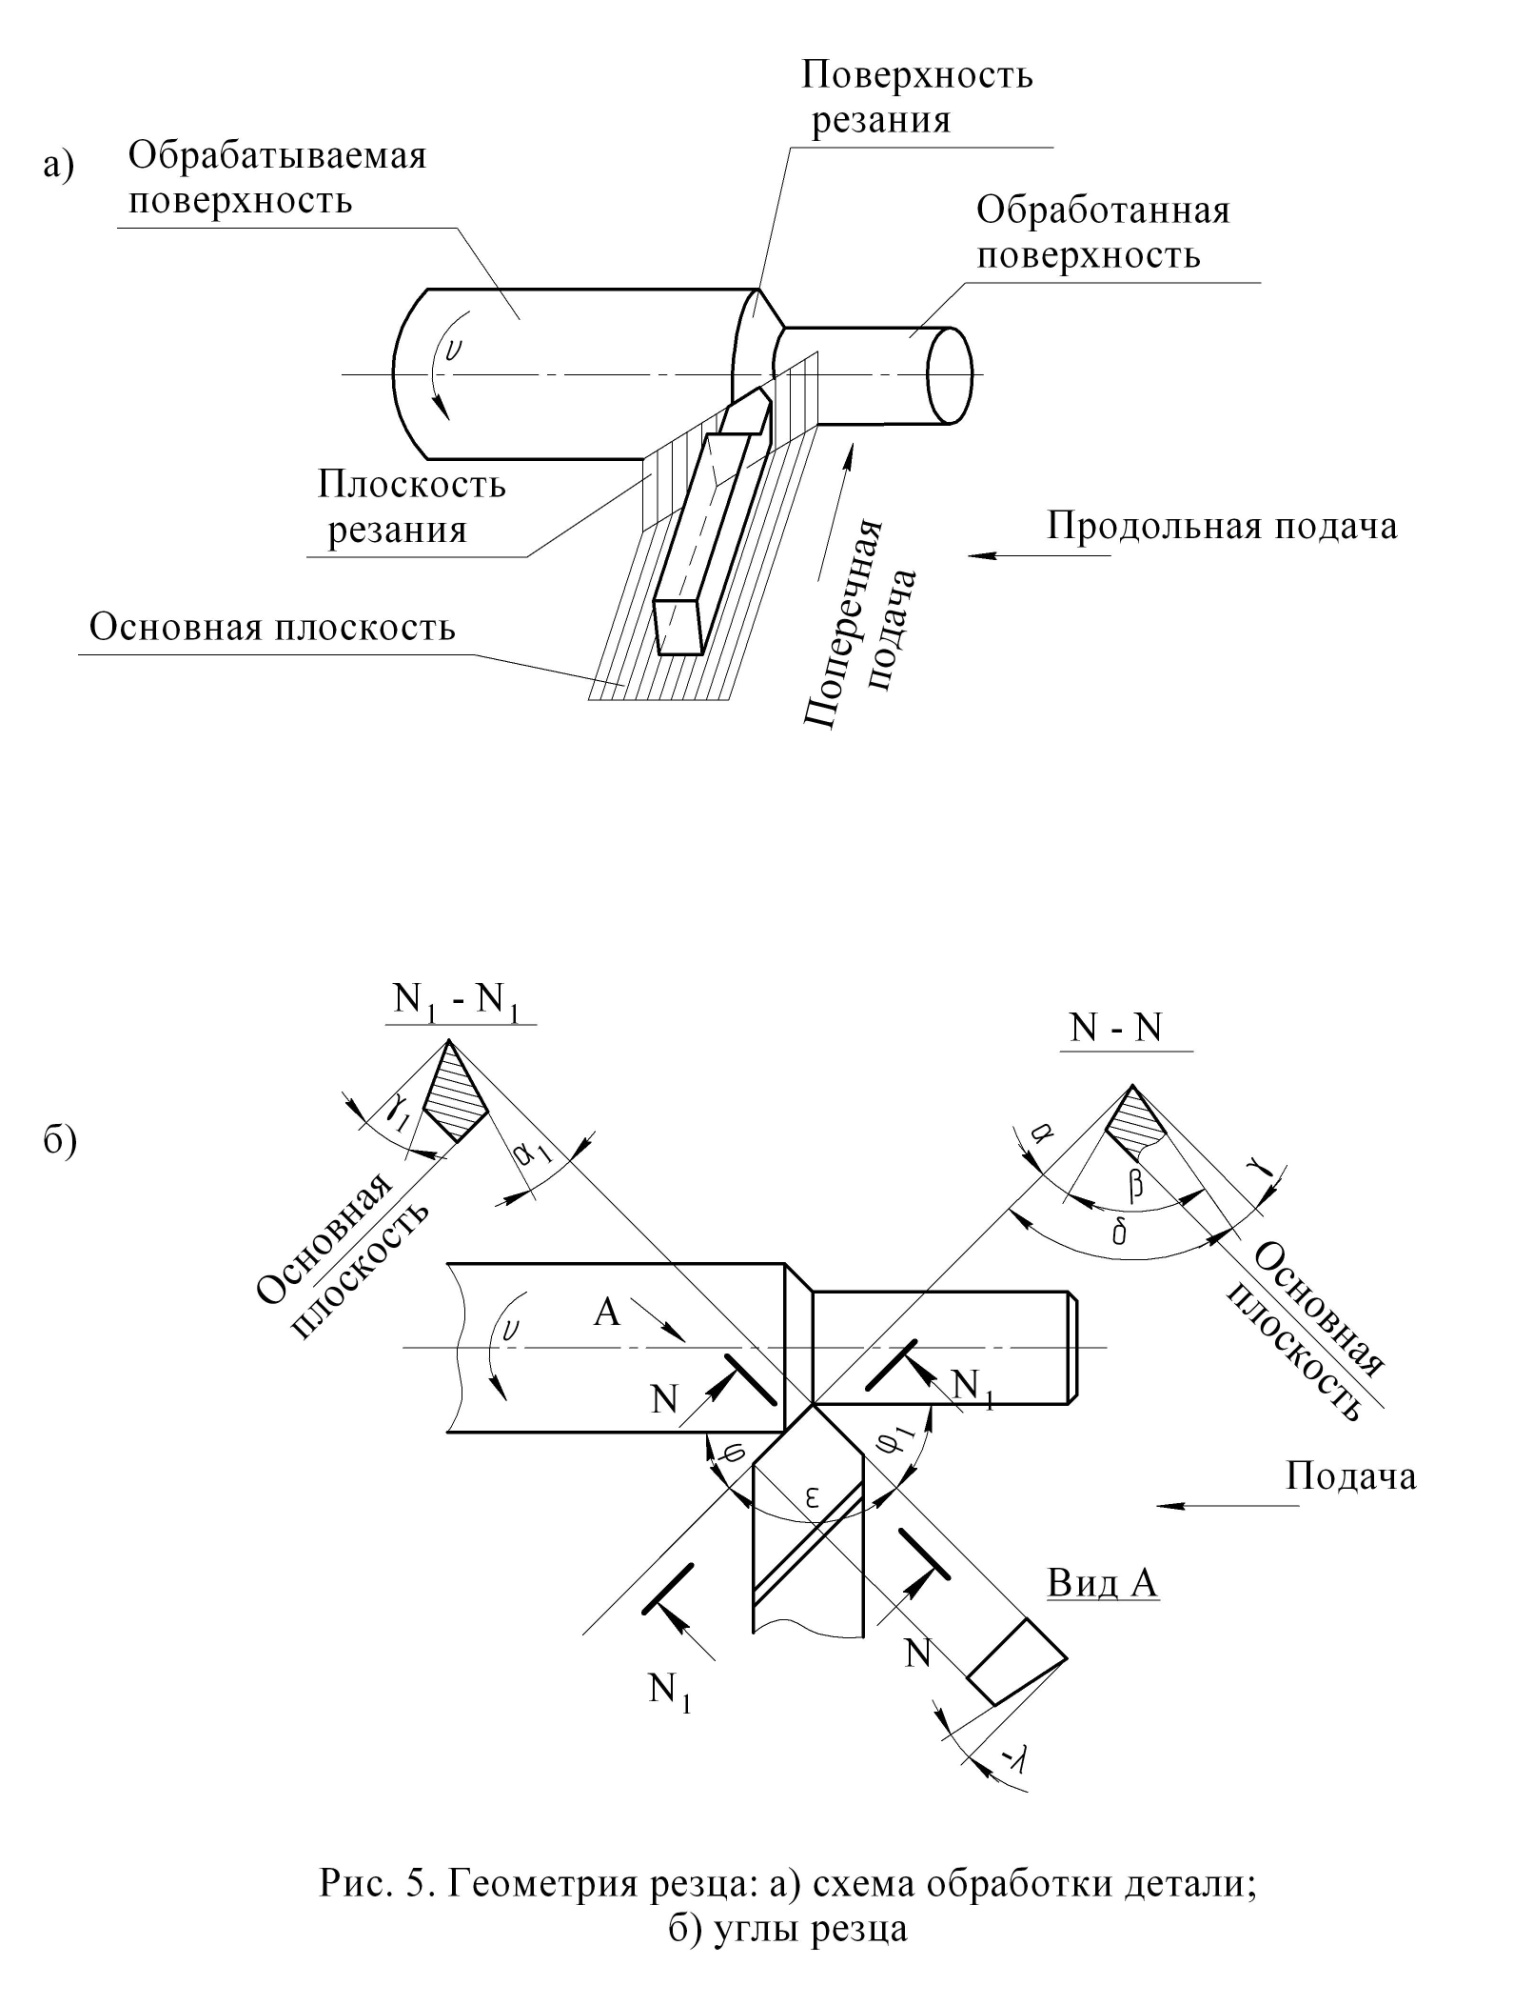 Геометрия токарного резца: основные элементы и углы, режущая часть